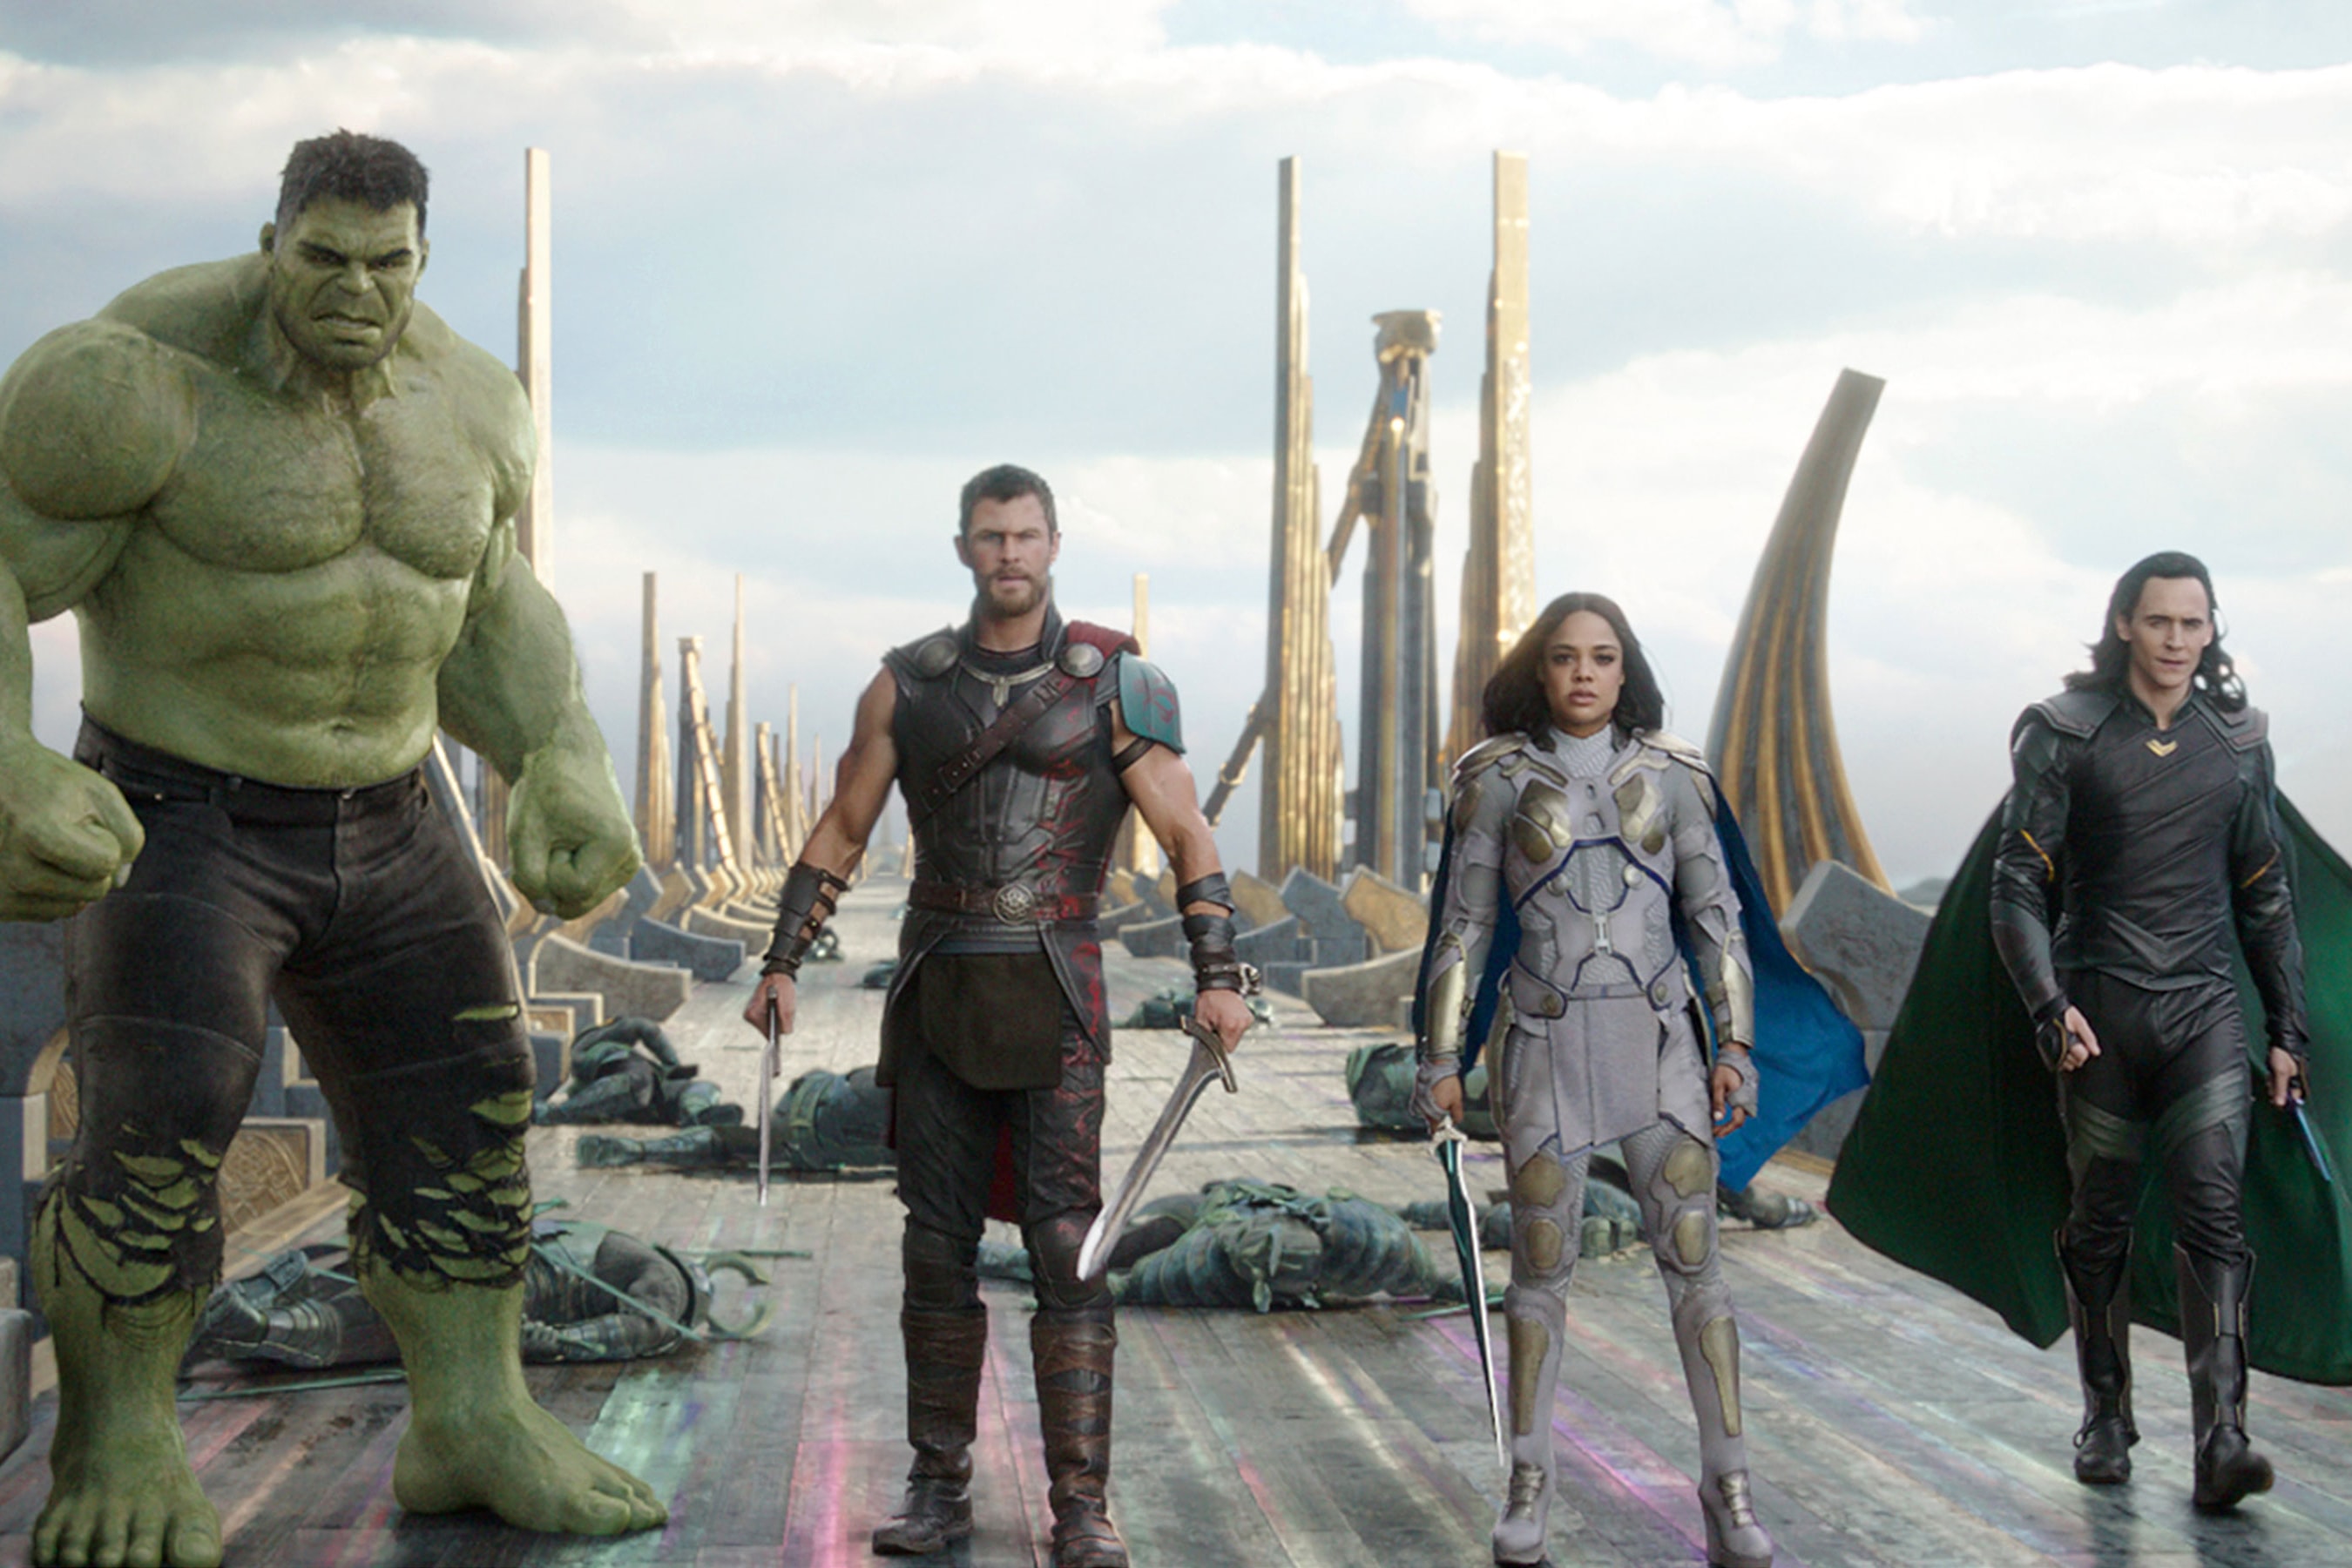 導演透露刪減了《Thor: Ragnarok》有關 Avengers 的一幕